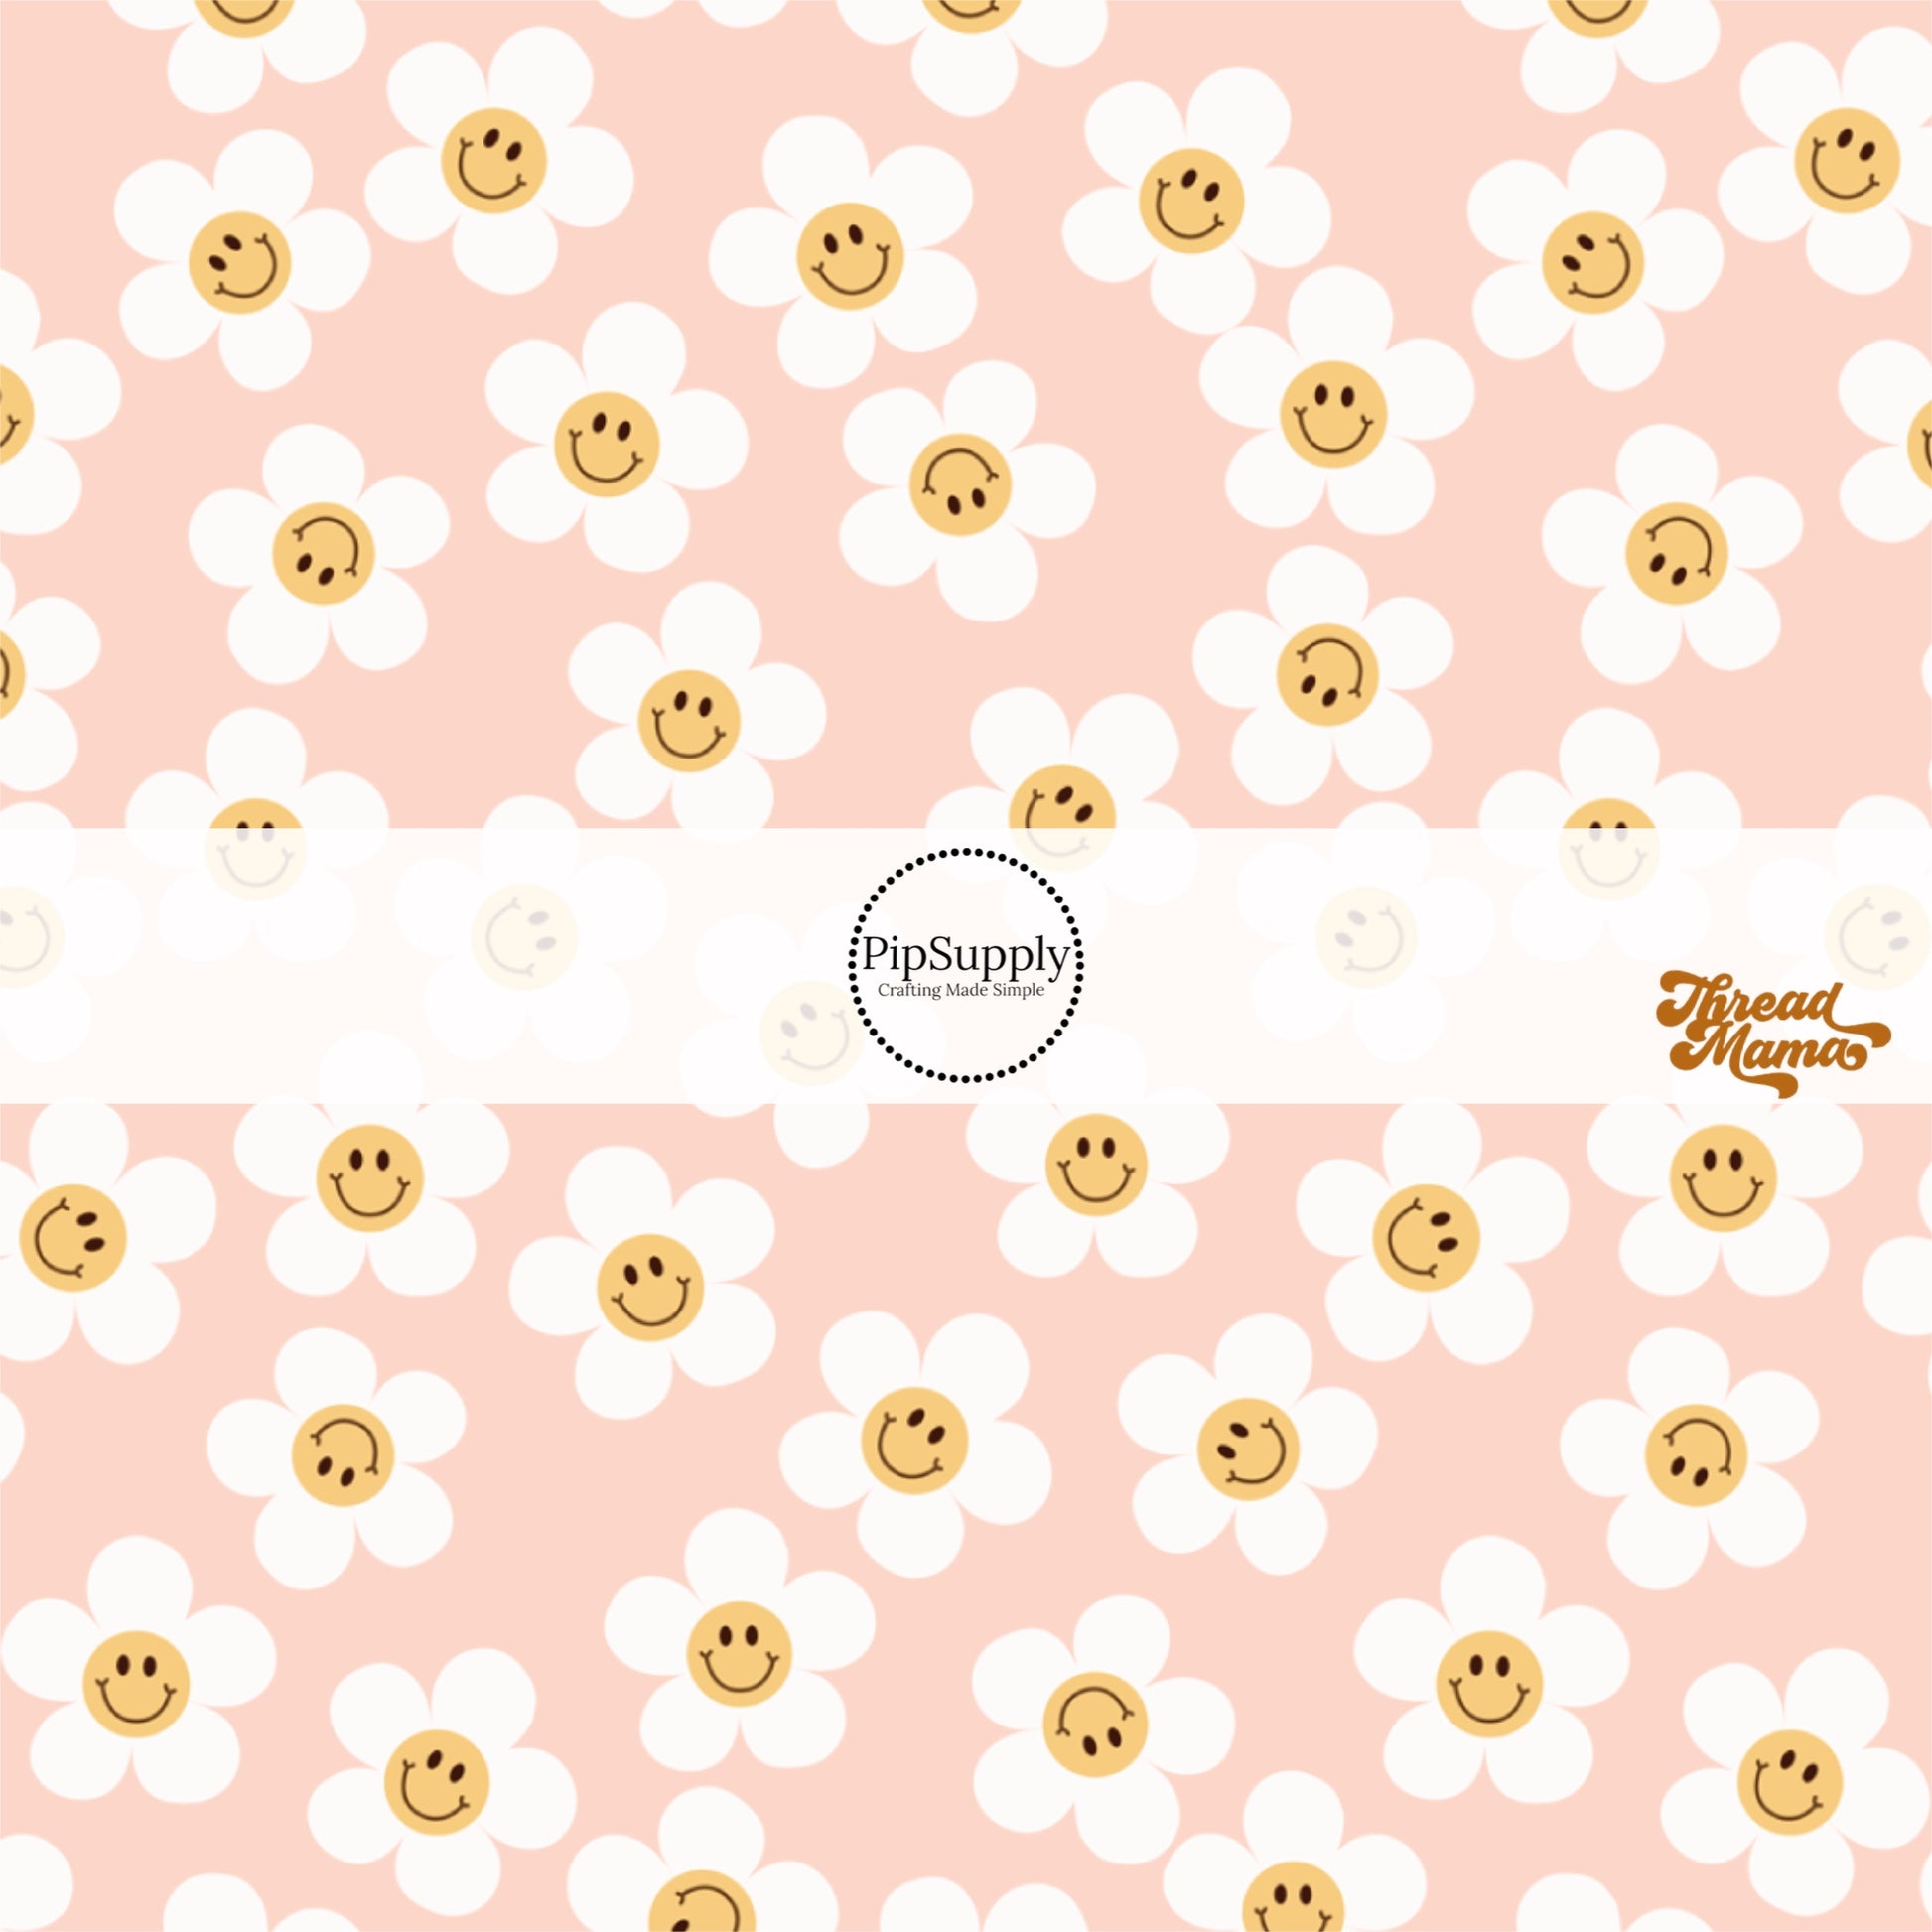 Orange smiley faces on white daisies on a pink bow strip